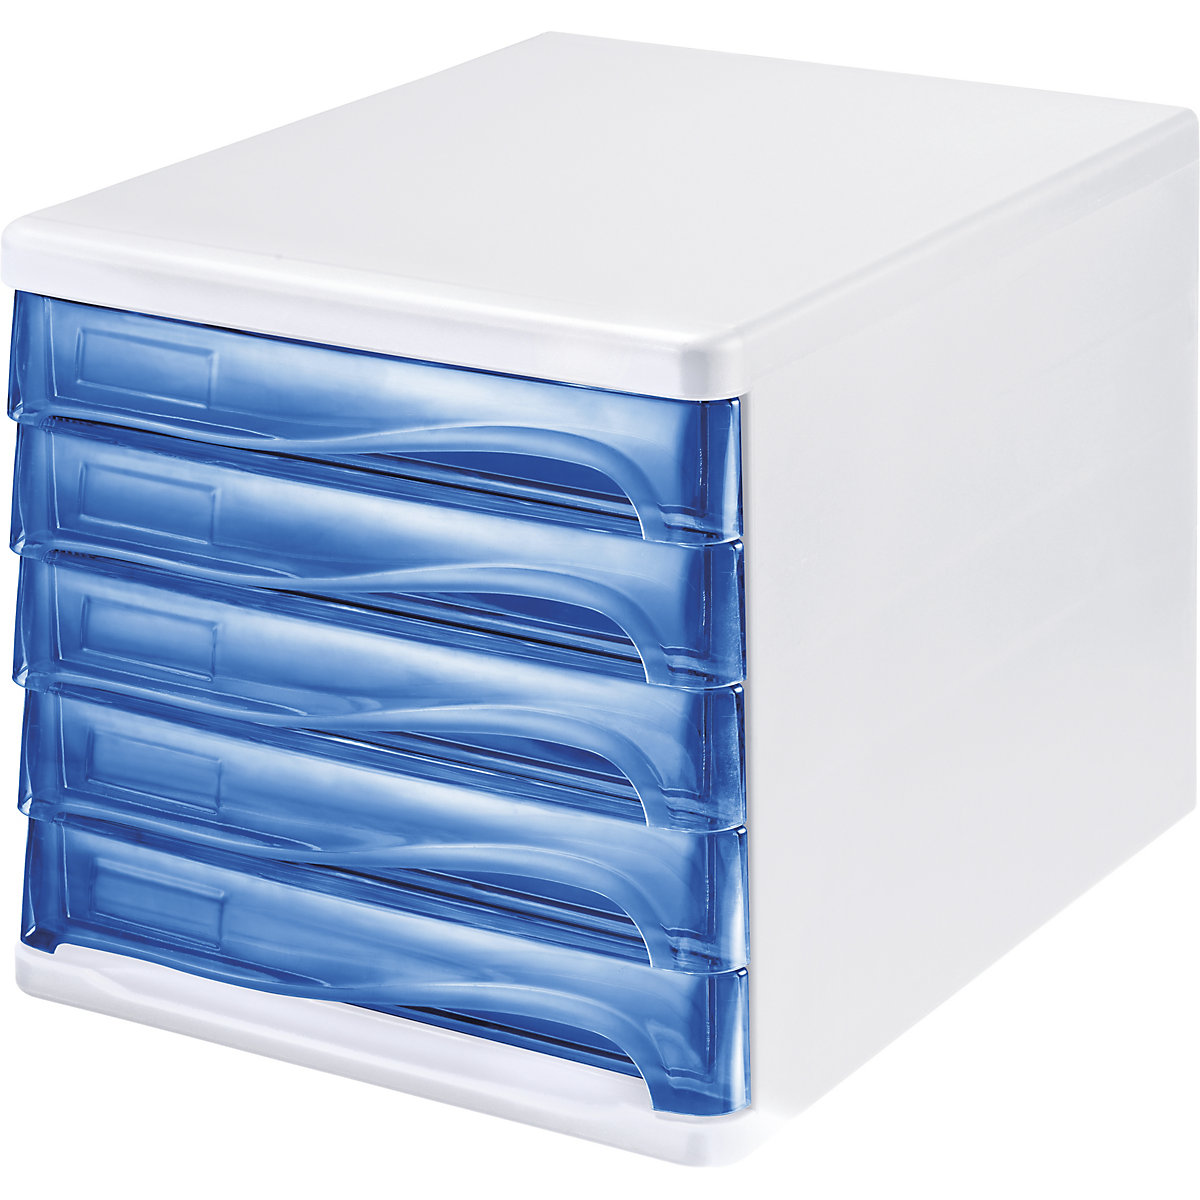 Schubladenbox helit, Gehäusefarbe Weiß, VE 4 Stk, Schubladenfarbe Blau, transparent